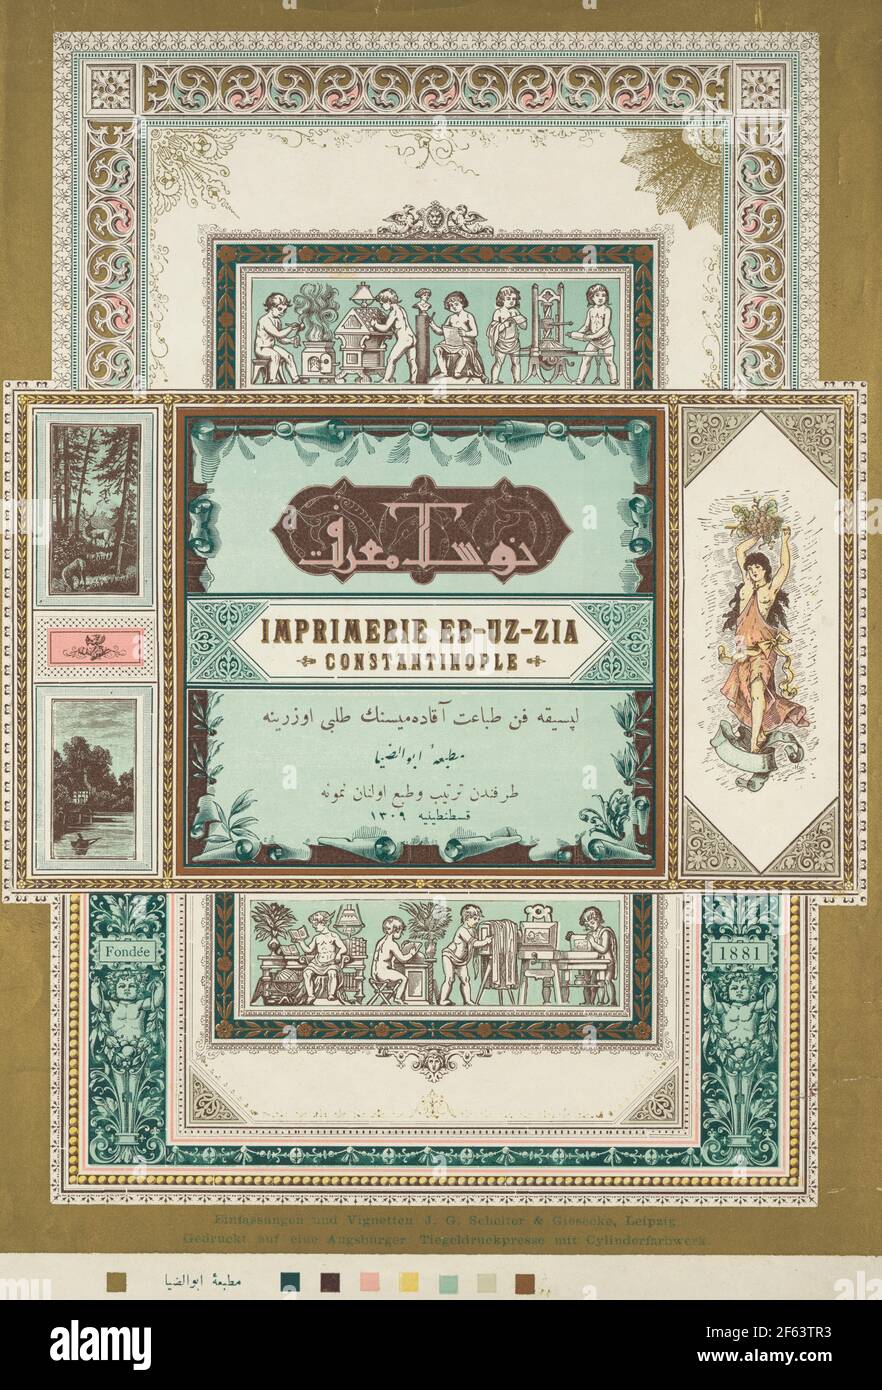 Imprimerie EB-uz-zia, Konstantinopel, Fondée 1881 - EB-uz-zia Druckmaschine, Konstantinopel, gegründet 1881 - Druckbild zeigt Vignetten von Cherub-ähnlichen Figuren, die Art, Druck, Lesen und Fotografieren, um 1900 Stockfoto